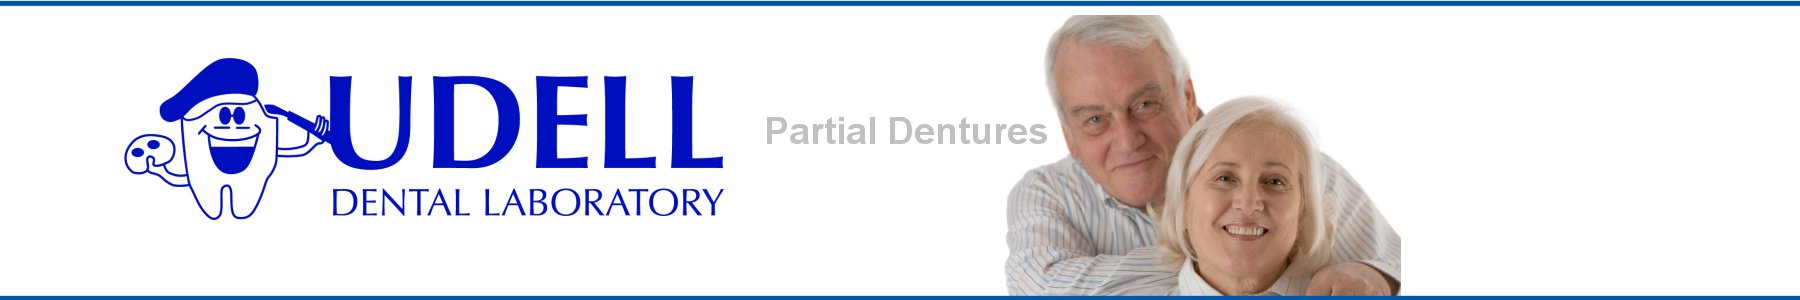 Udell Dental Laboratory Partial Dentures